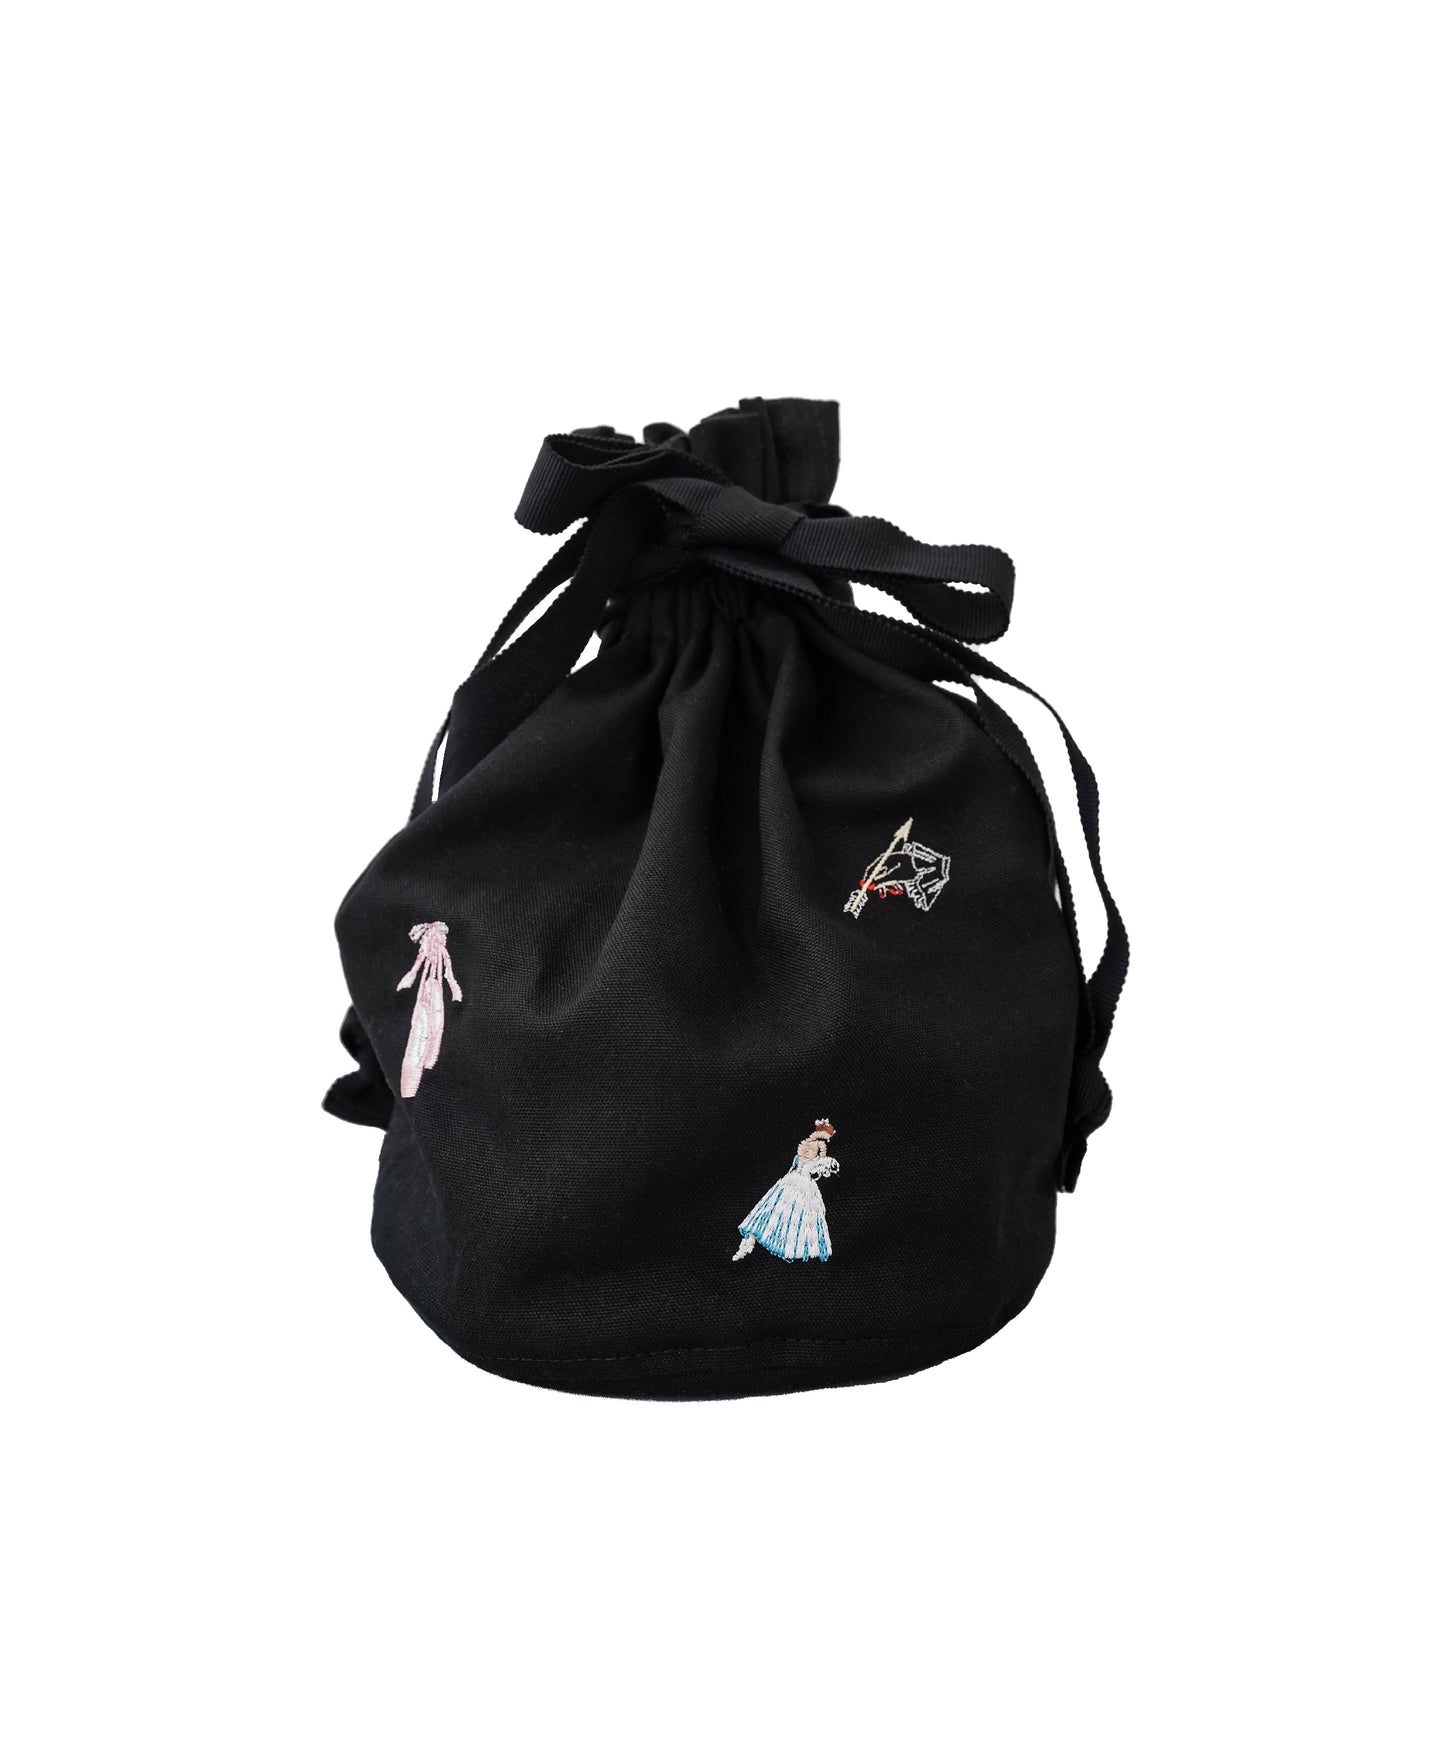 【10月末再販予定】ミニバッグ / Embroidered Bag